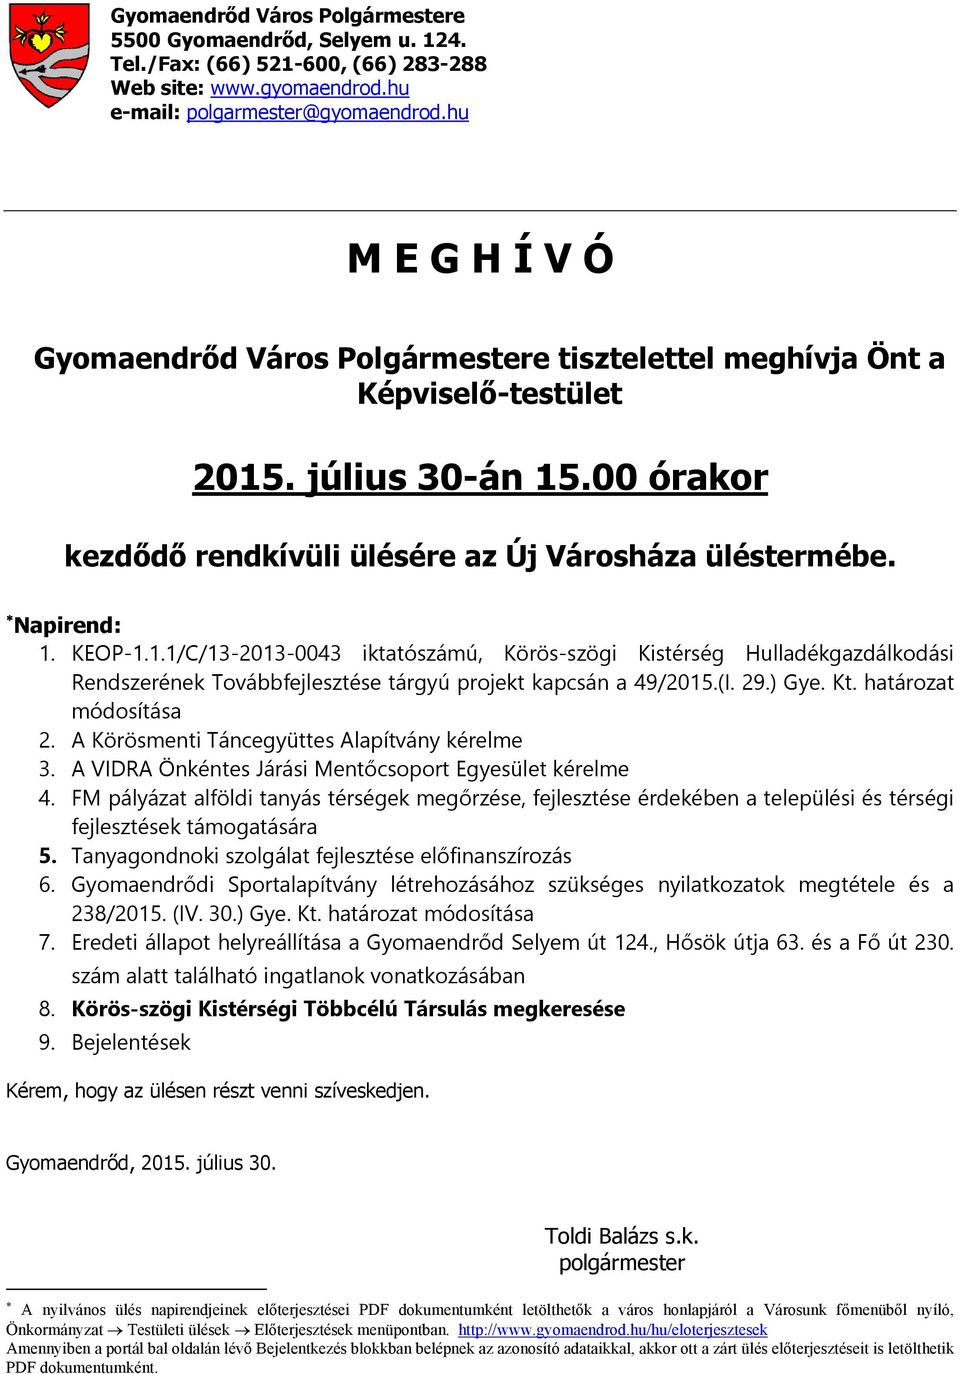 KEOP-1.1.1/C/13-2013-0043 iktatószámú, Körös-szögi Kistérség Hulladékgazdálkodási Rendszerének Továbbfejlesztése tárgyú projekt kapcsán a 49/2015.(I. 29.) Gye. Kt. határozat módosítása 2.